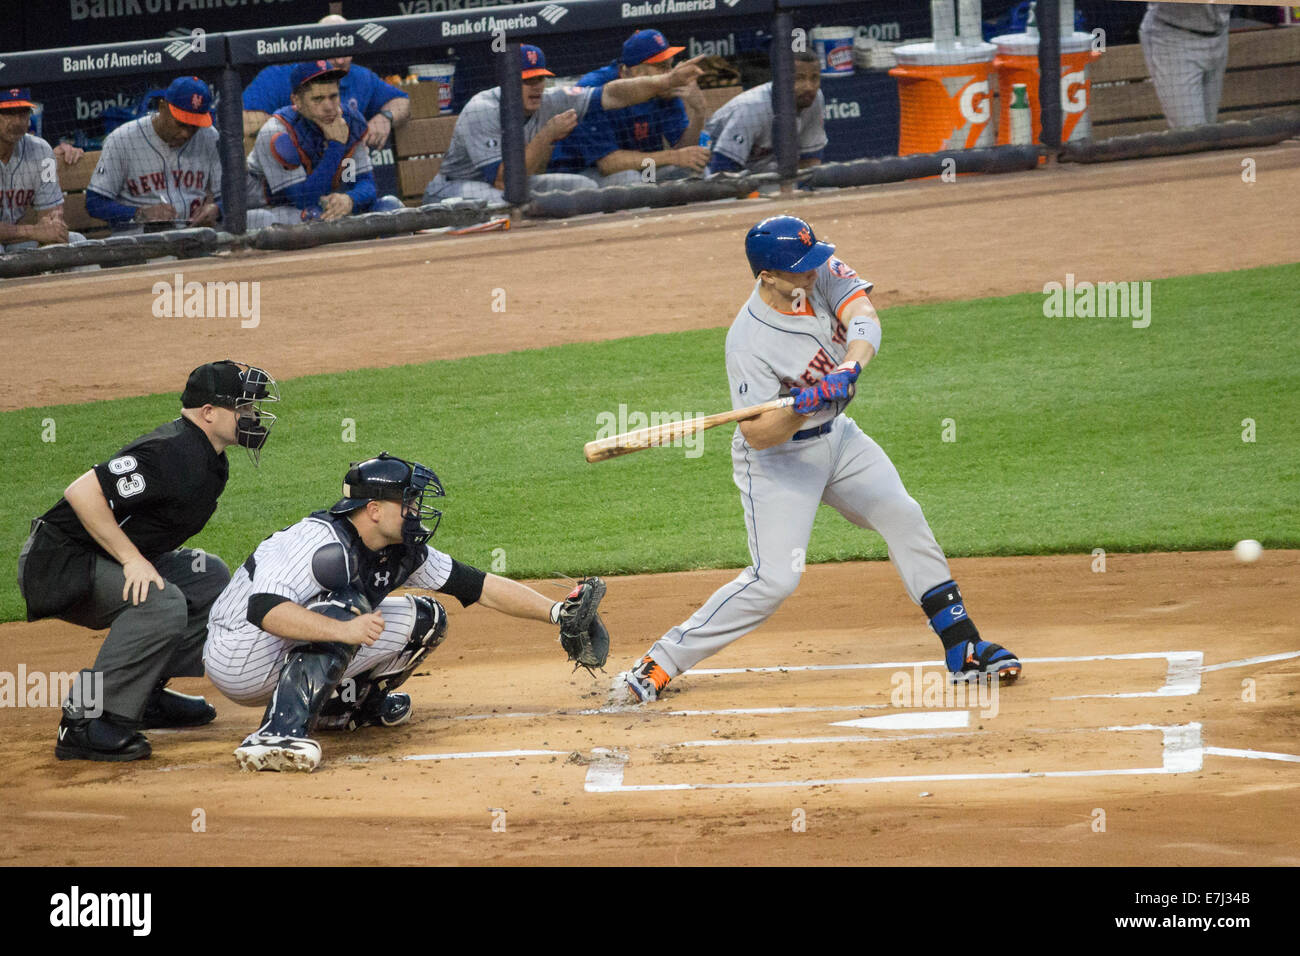 Cette image montre NY Mets de troisième but et superstar David Wright à bat- quelques instants avant de frapper la balle pour un RBI- Banque D'Images